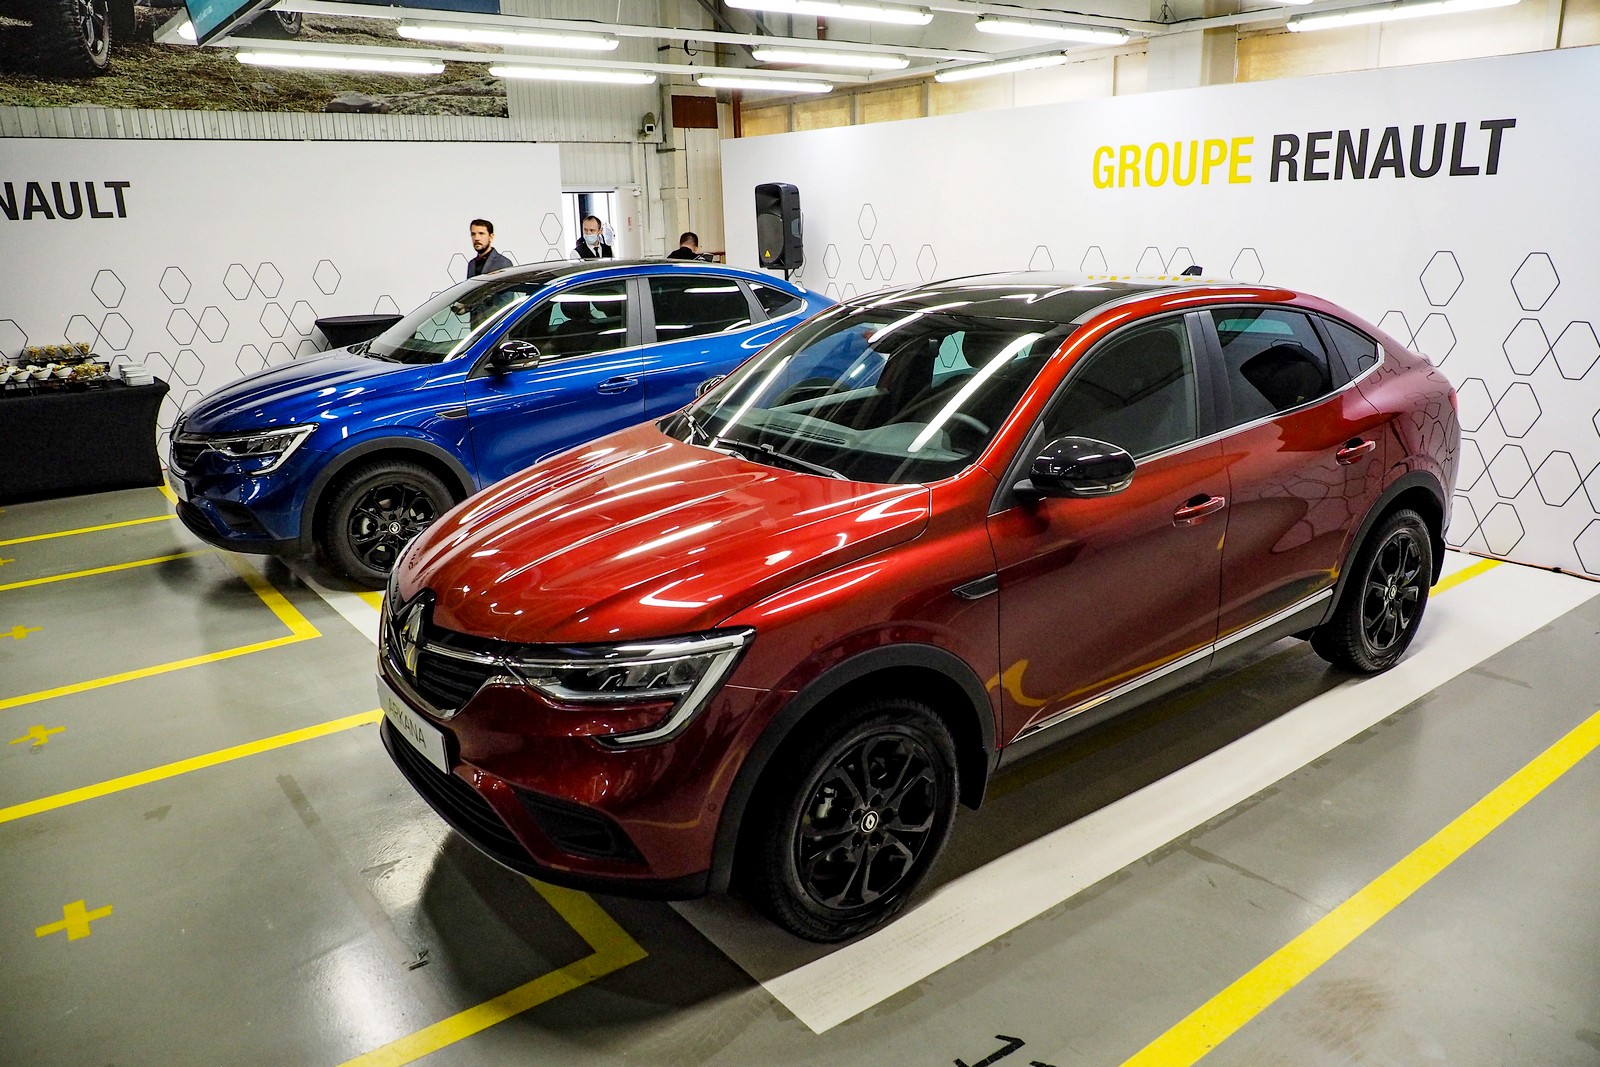 Вместо Apple и Android: Renault показали собственную экосистему для связи автомобиля и смартфона